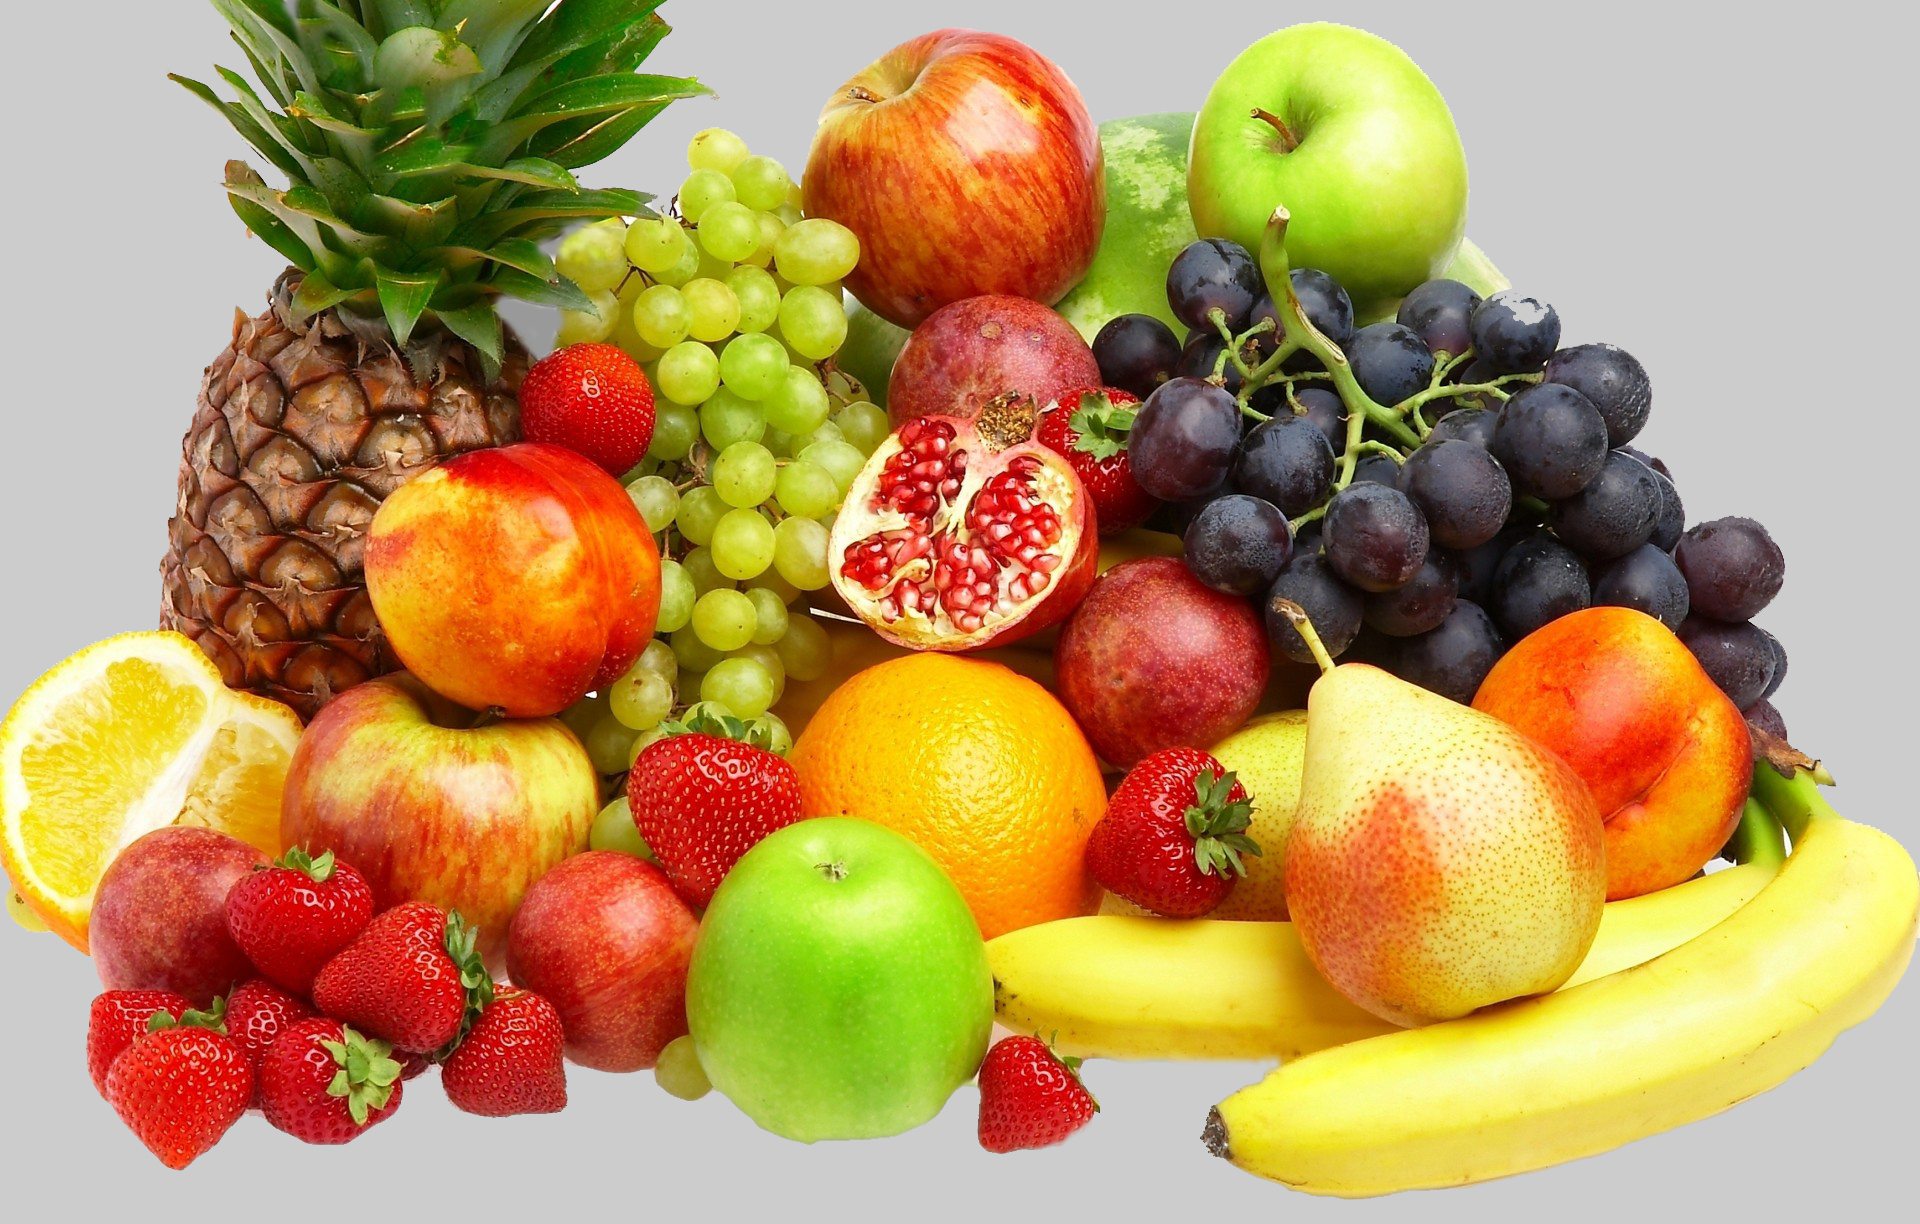 10 loại trái cây có tác dụng tốt cho người bị tăng cân, đang muốn giảm cân an toàn, hiệu quả.